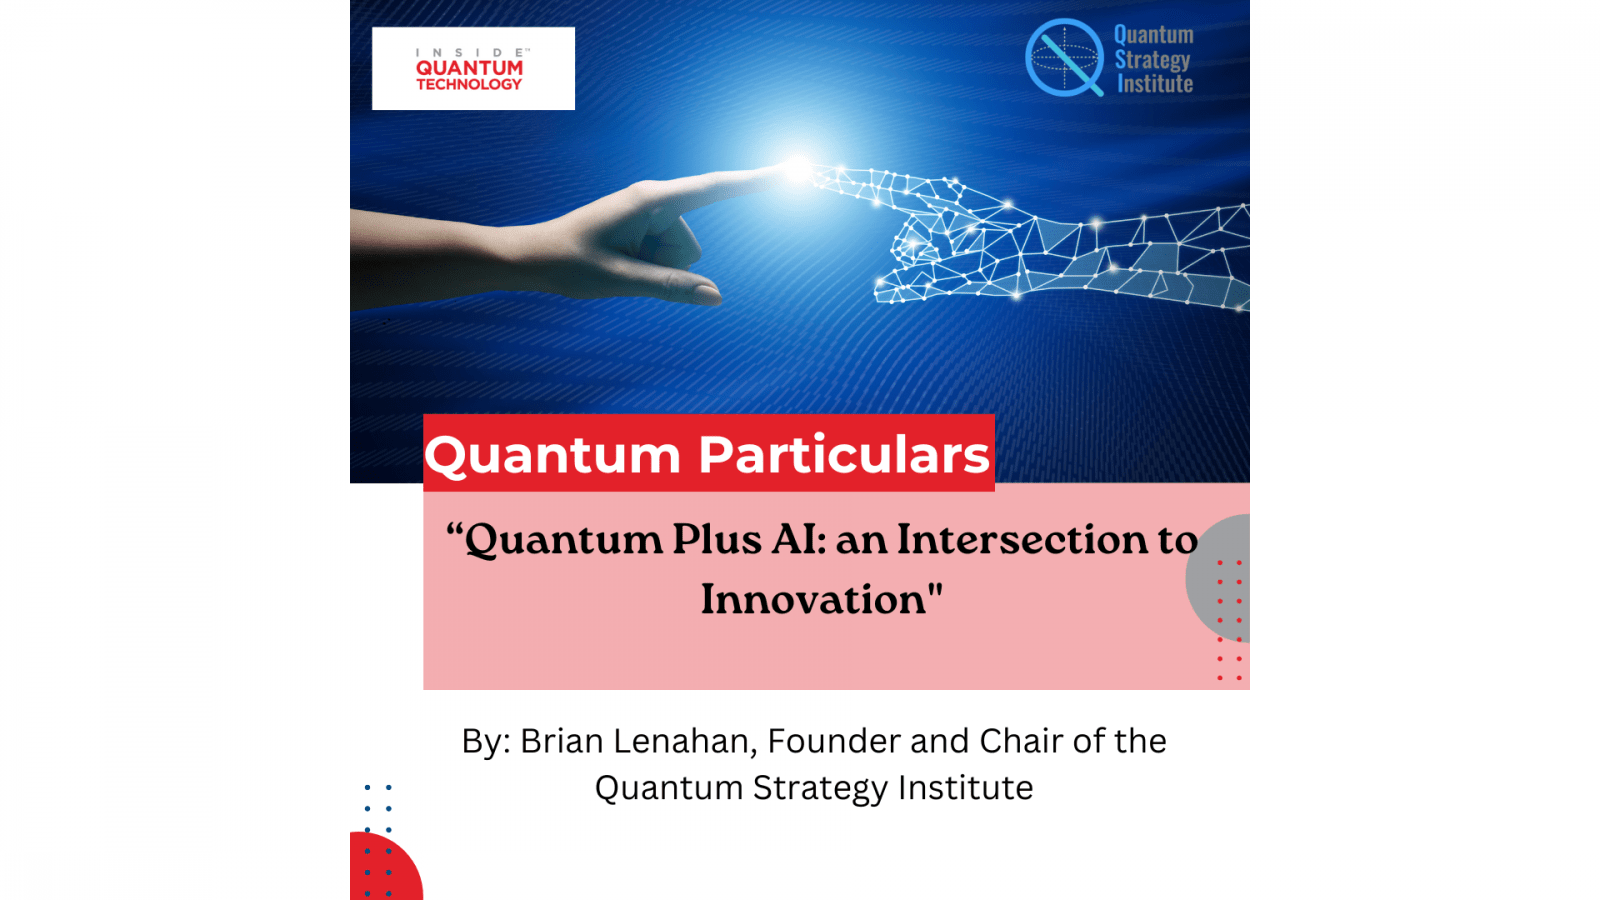 Kuantum Strateji Enstitüsü Kurucusu ve Başkanı Brian Lenahan, yeni bir konuk makalesinde yapay zeka ile kuantum hesaplama arasındaki kesişimi tartışıyor.